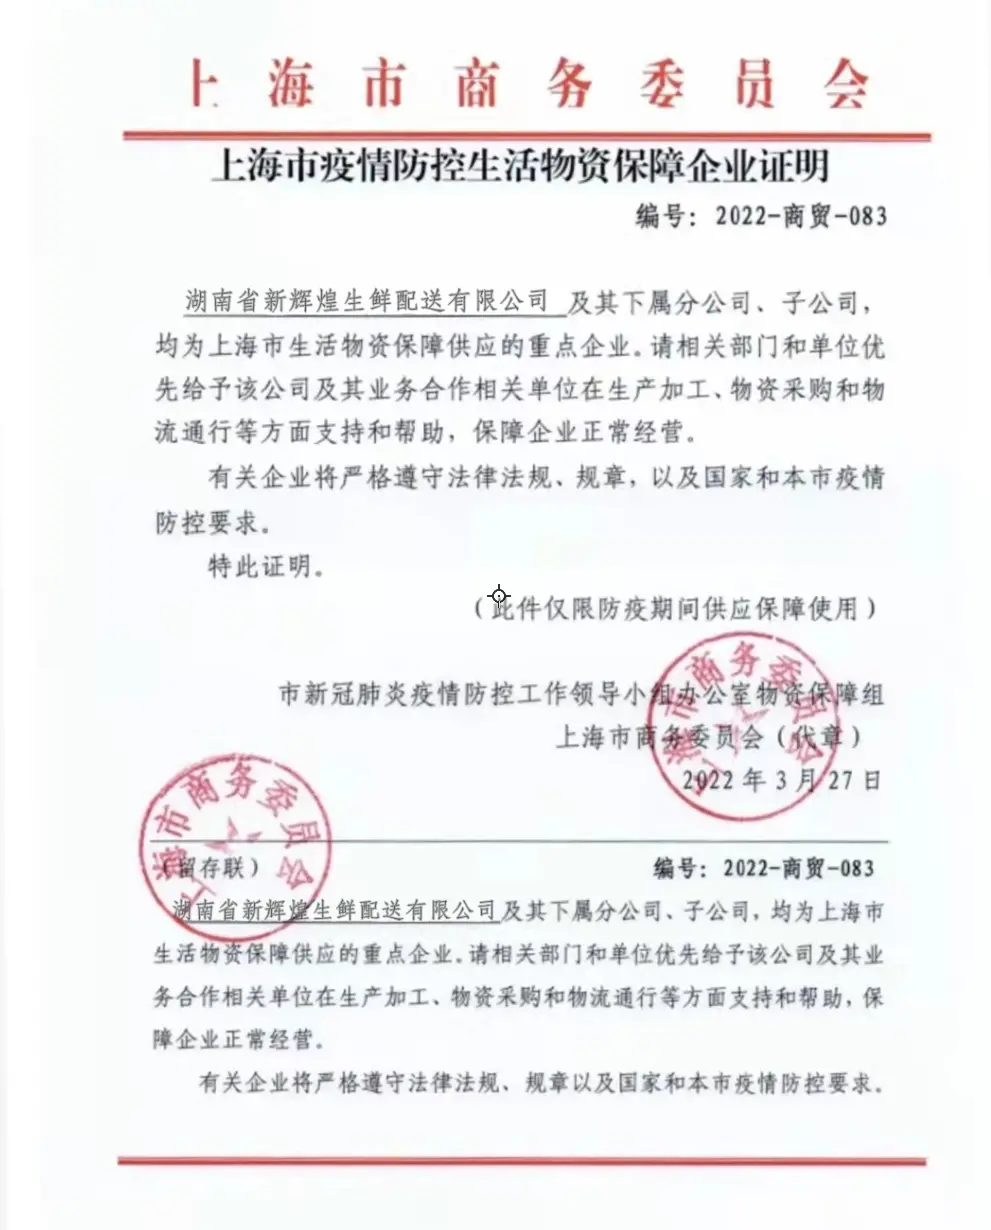 上海团长称团到臭猪肉 平台代理疑造假保供文件(图3)